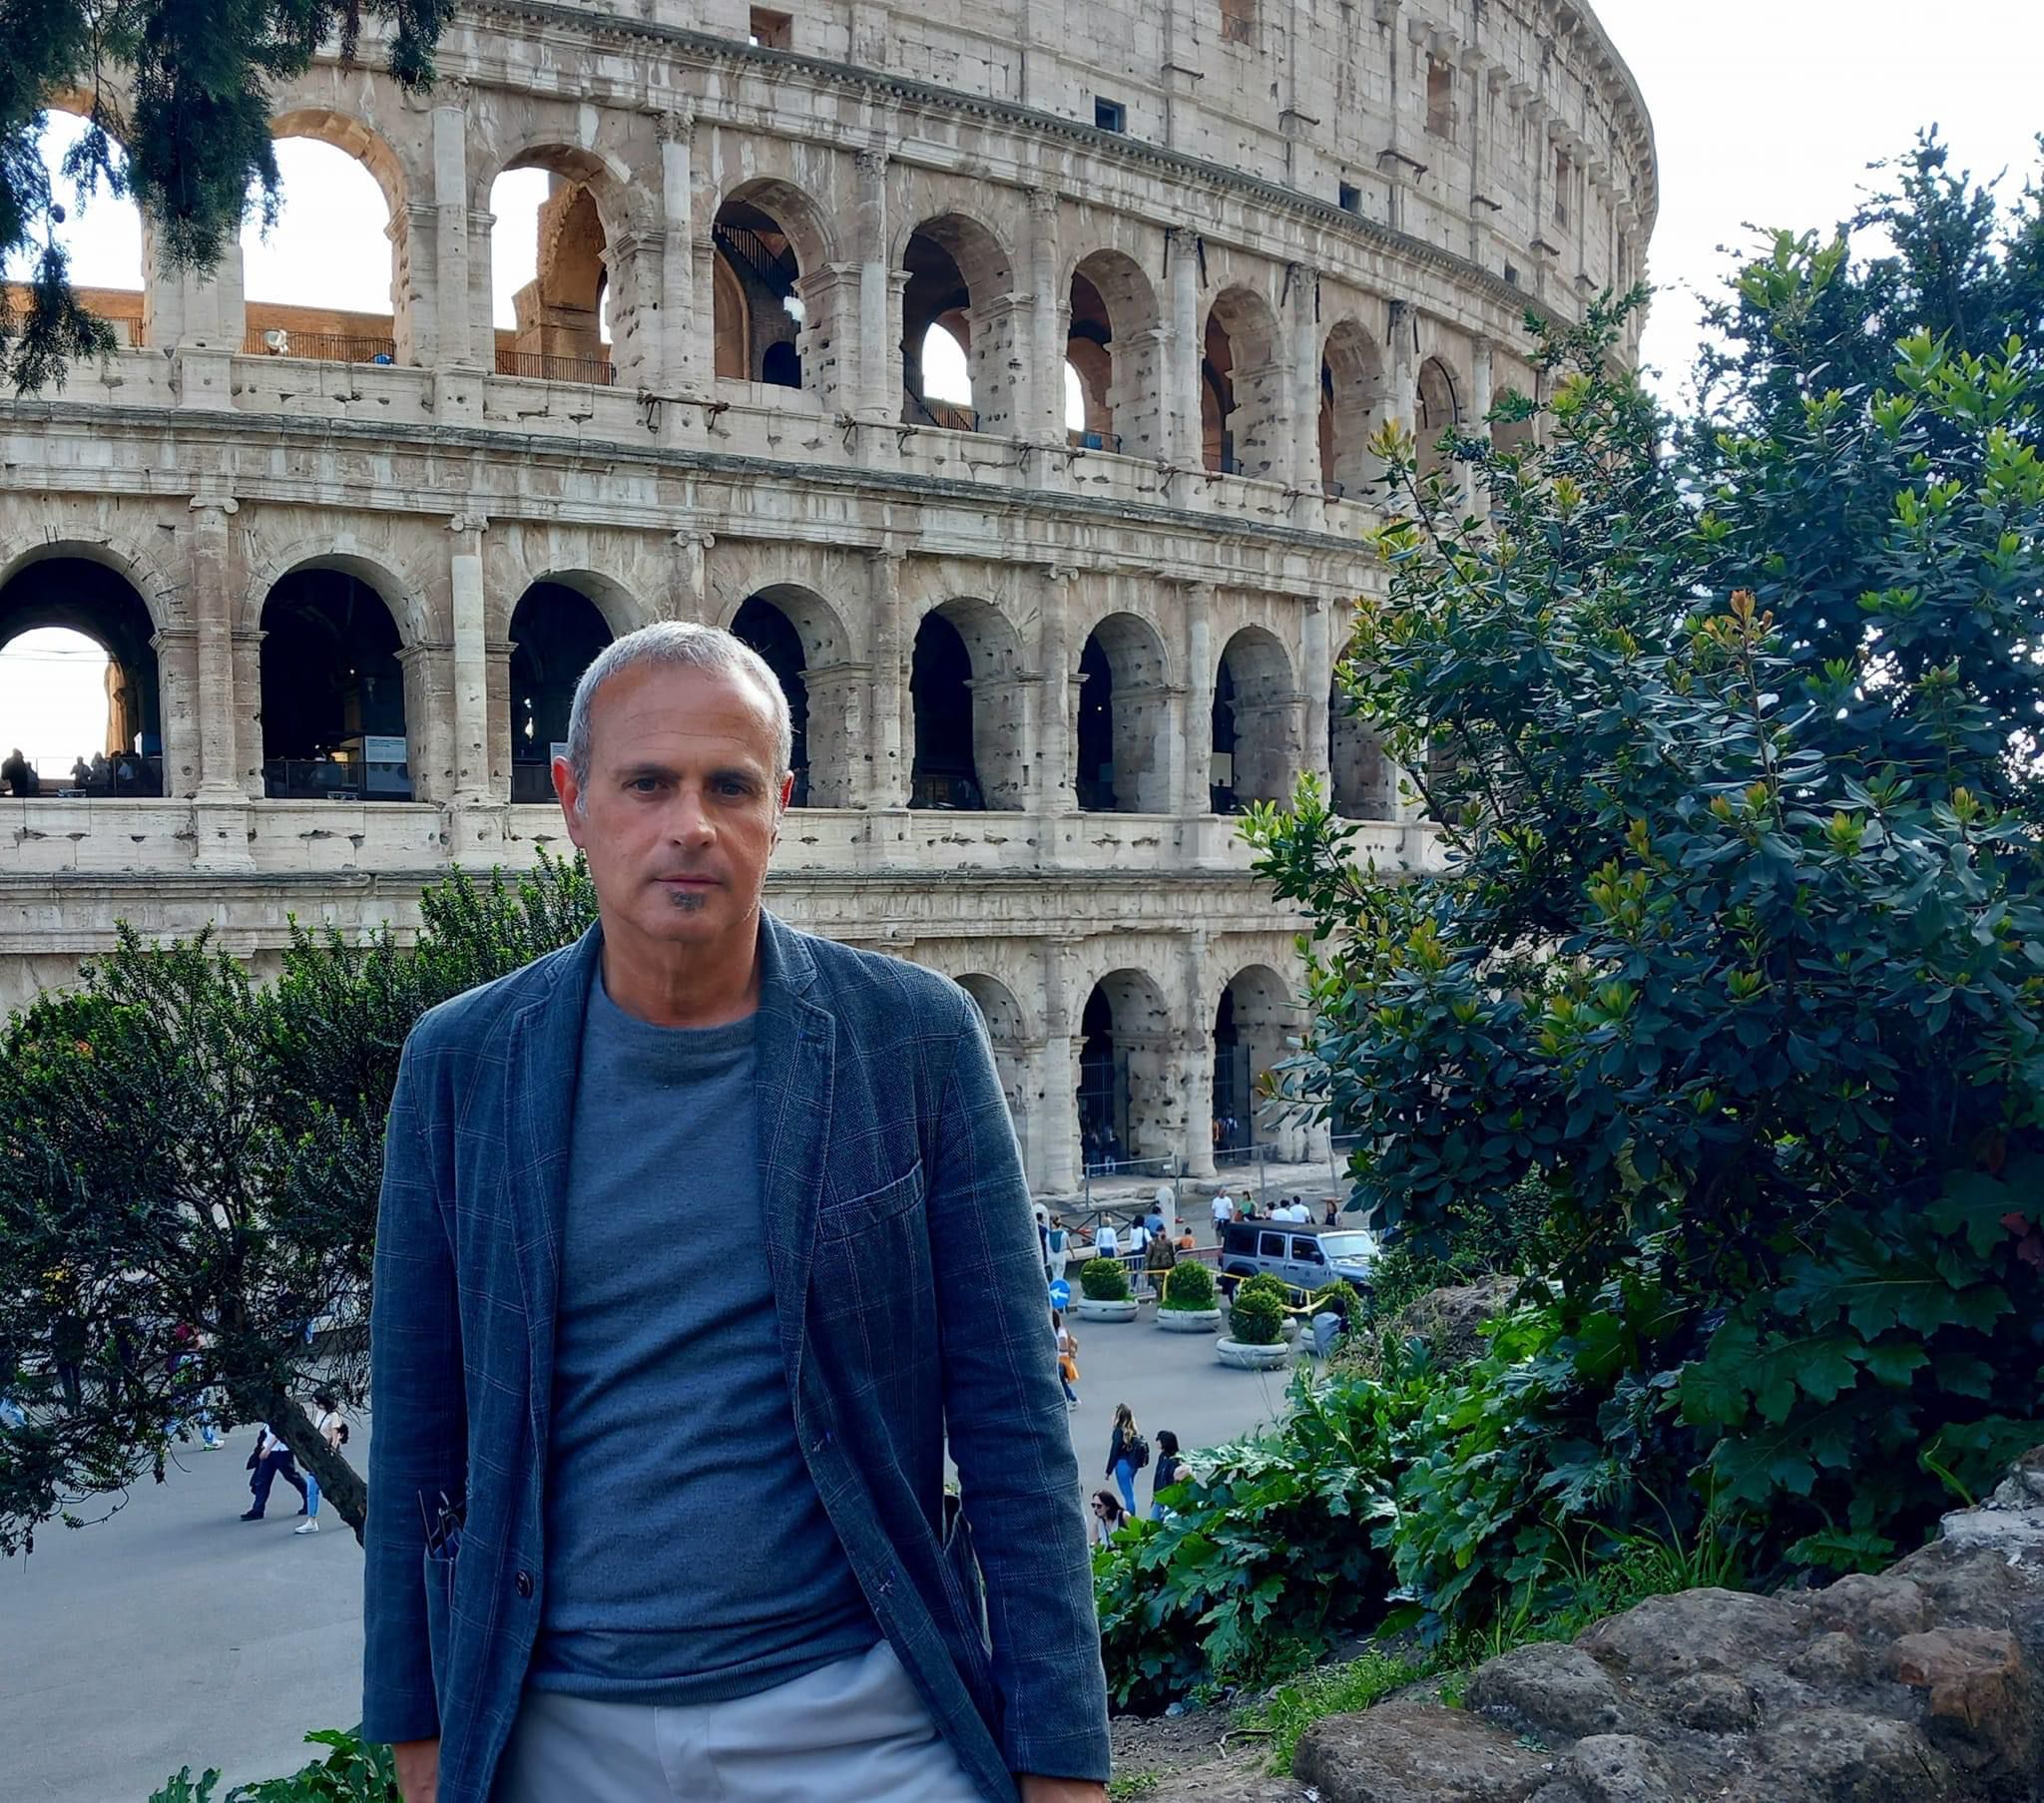 Alberto Samonà, giornalista e scrittore siciliano, è stato nominato consigliere di amministrazione del Parco archeologico del Colosseo.